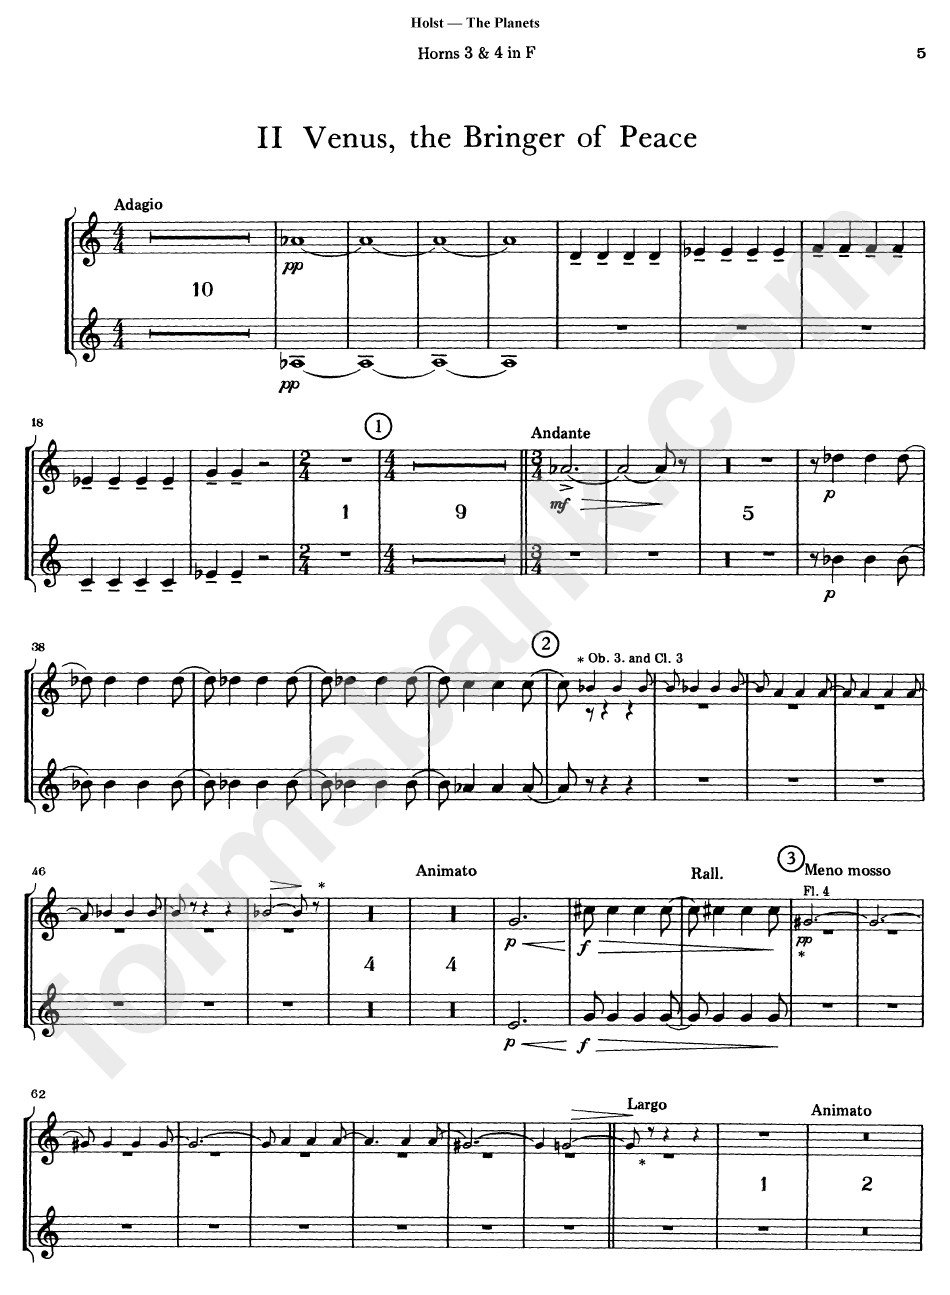 Gustav Holst - The Planets Sheet Music